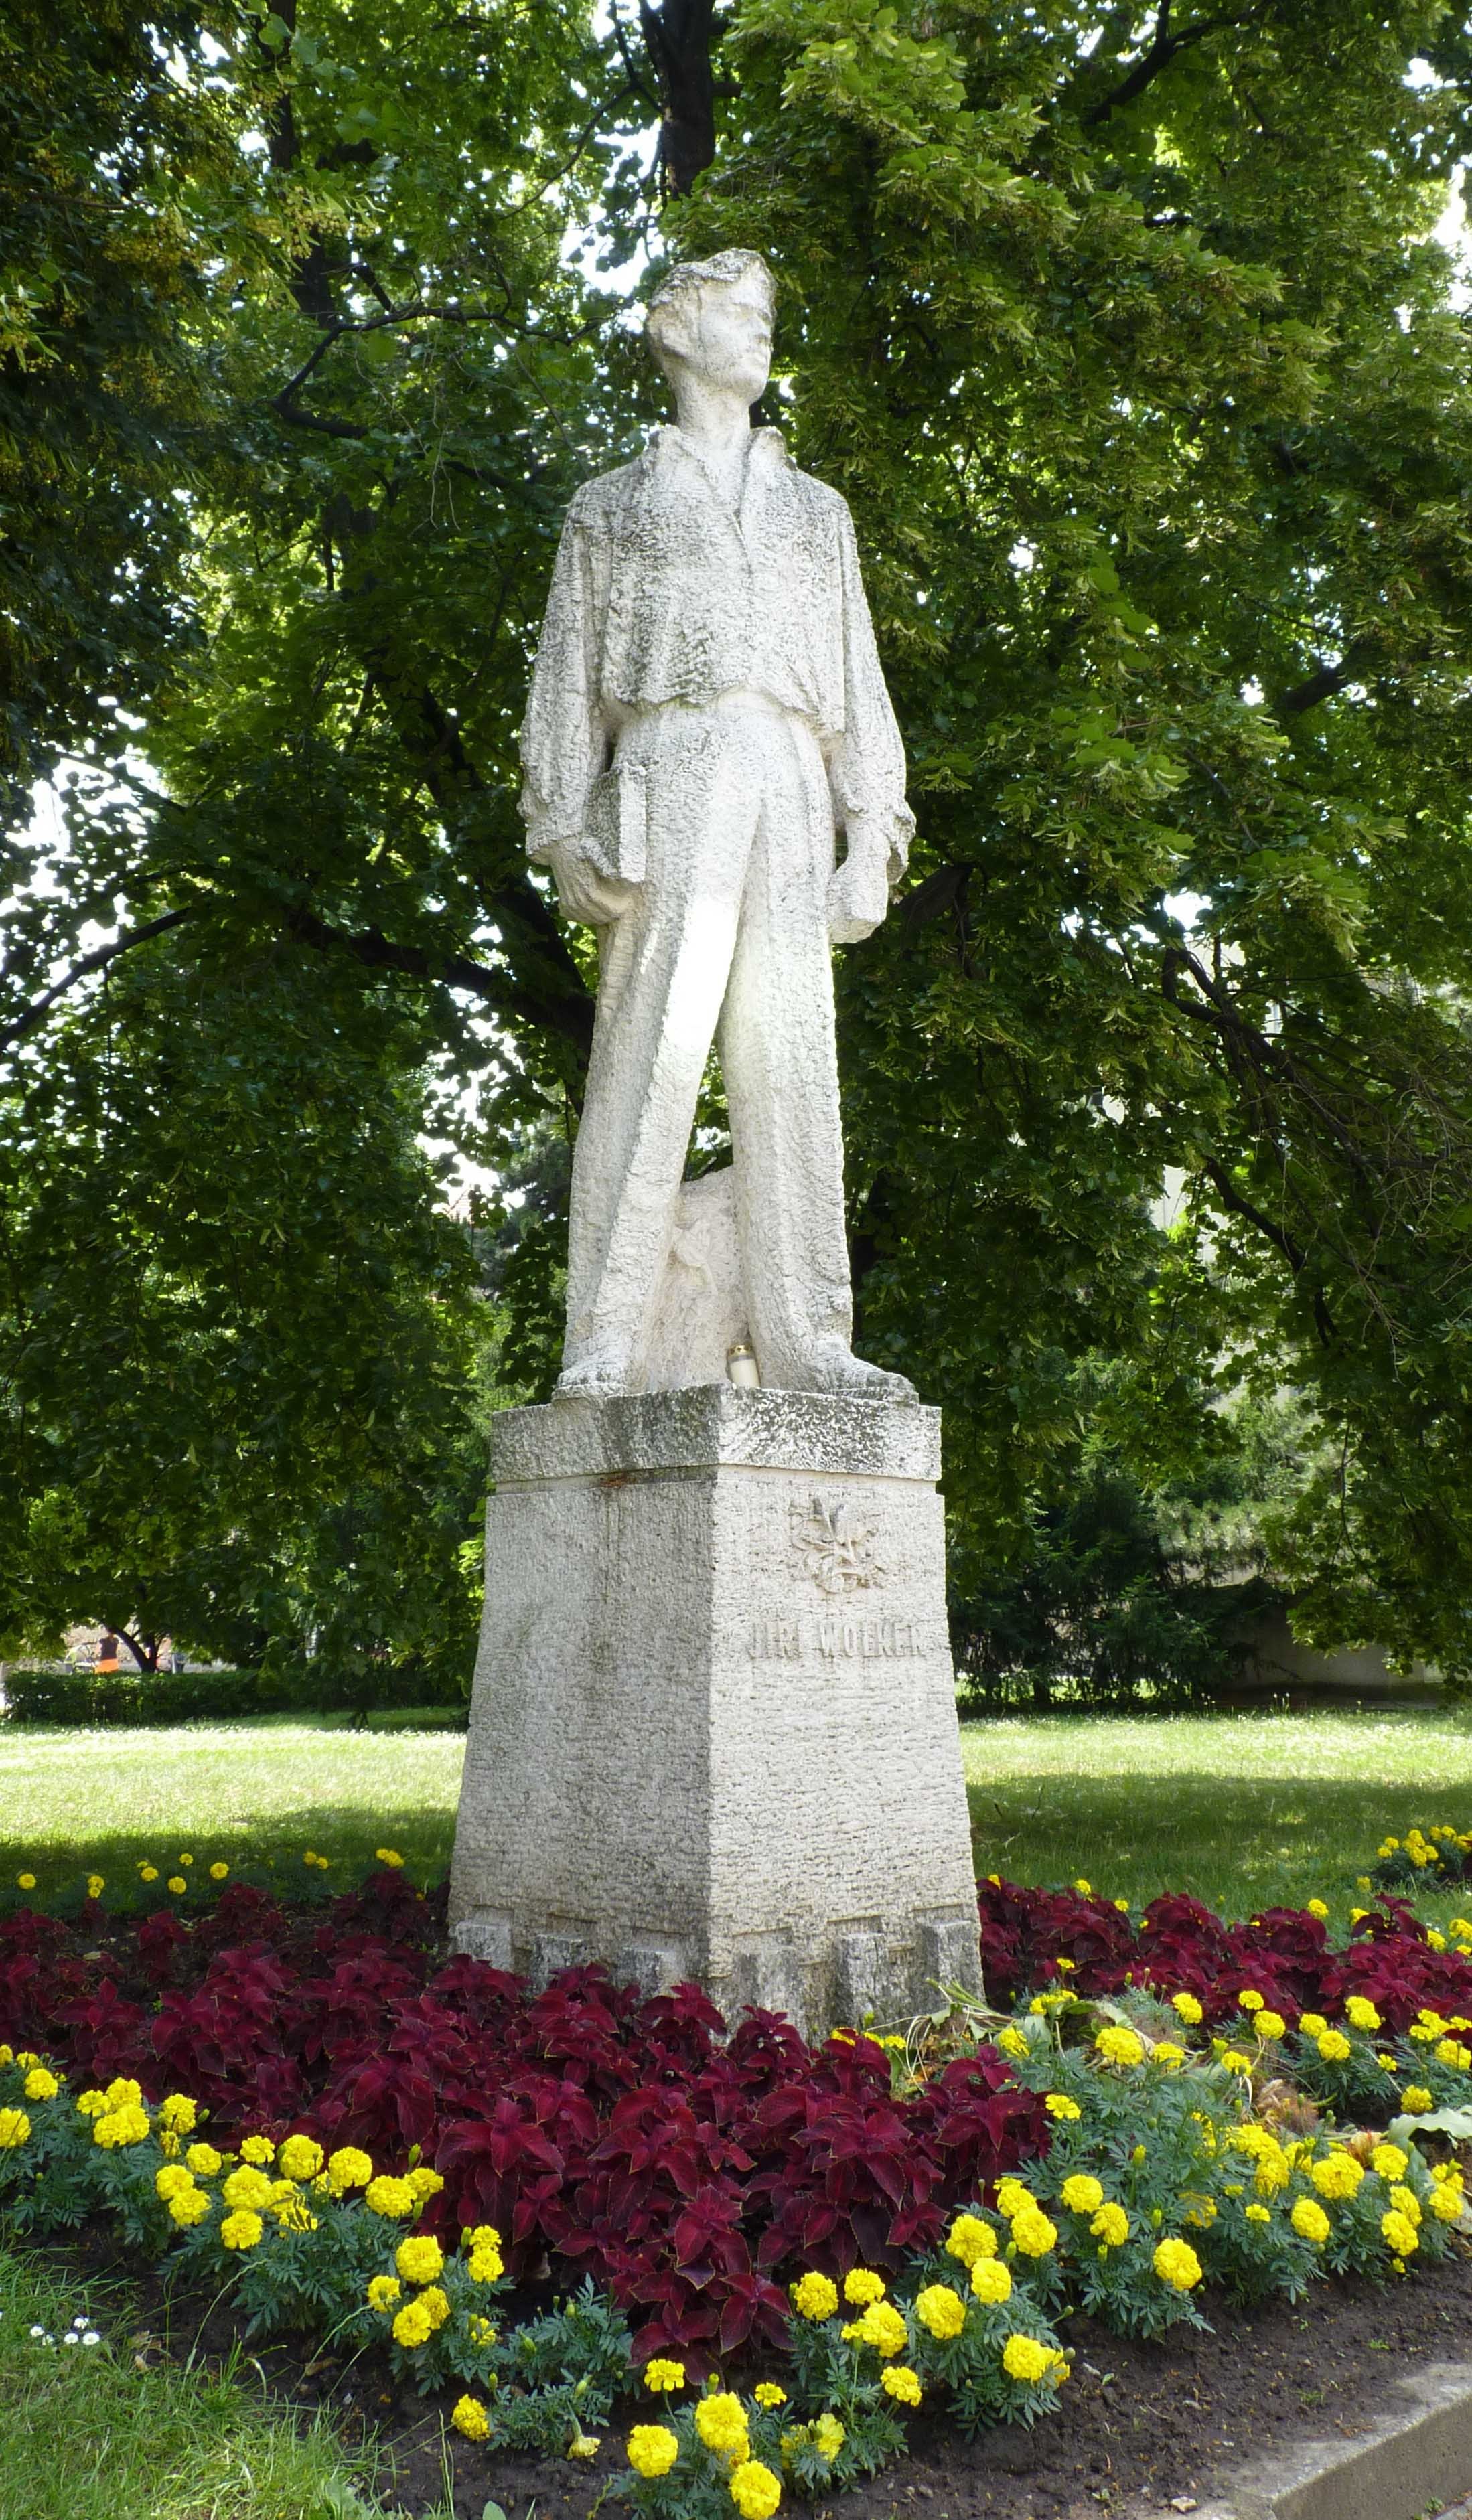 Statue of Jiří Wolker